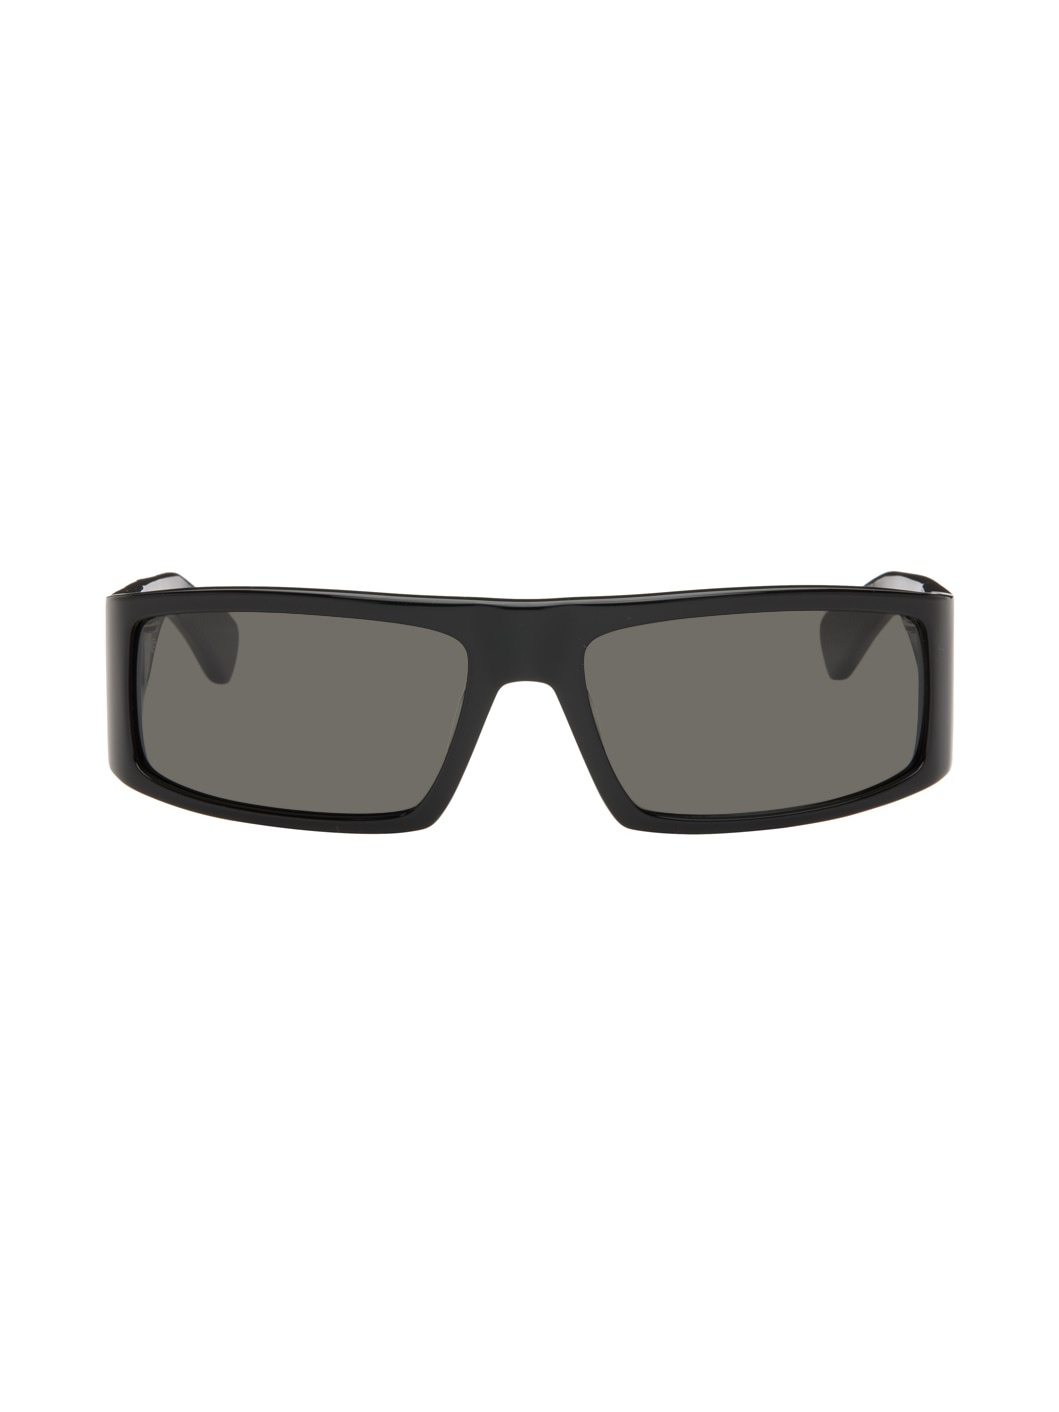 Black Nightlife Sunglasses - 1